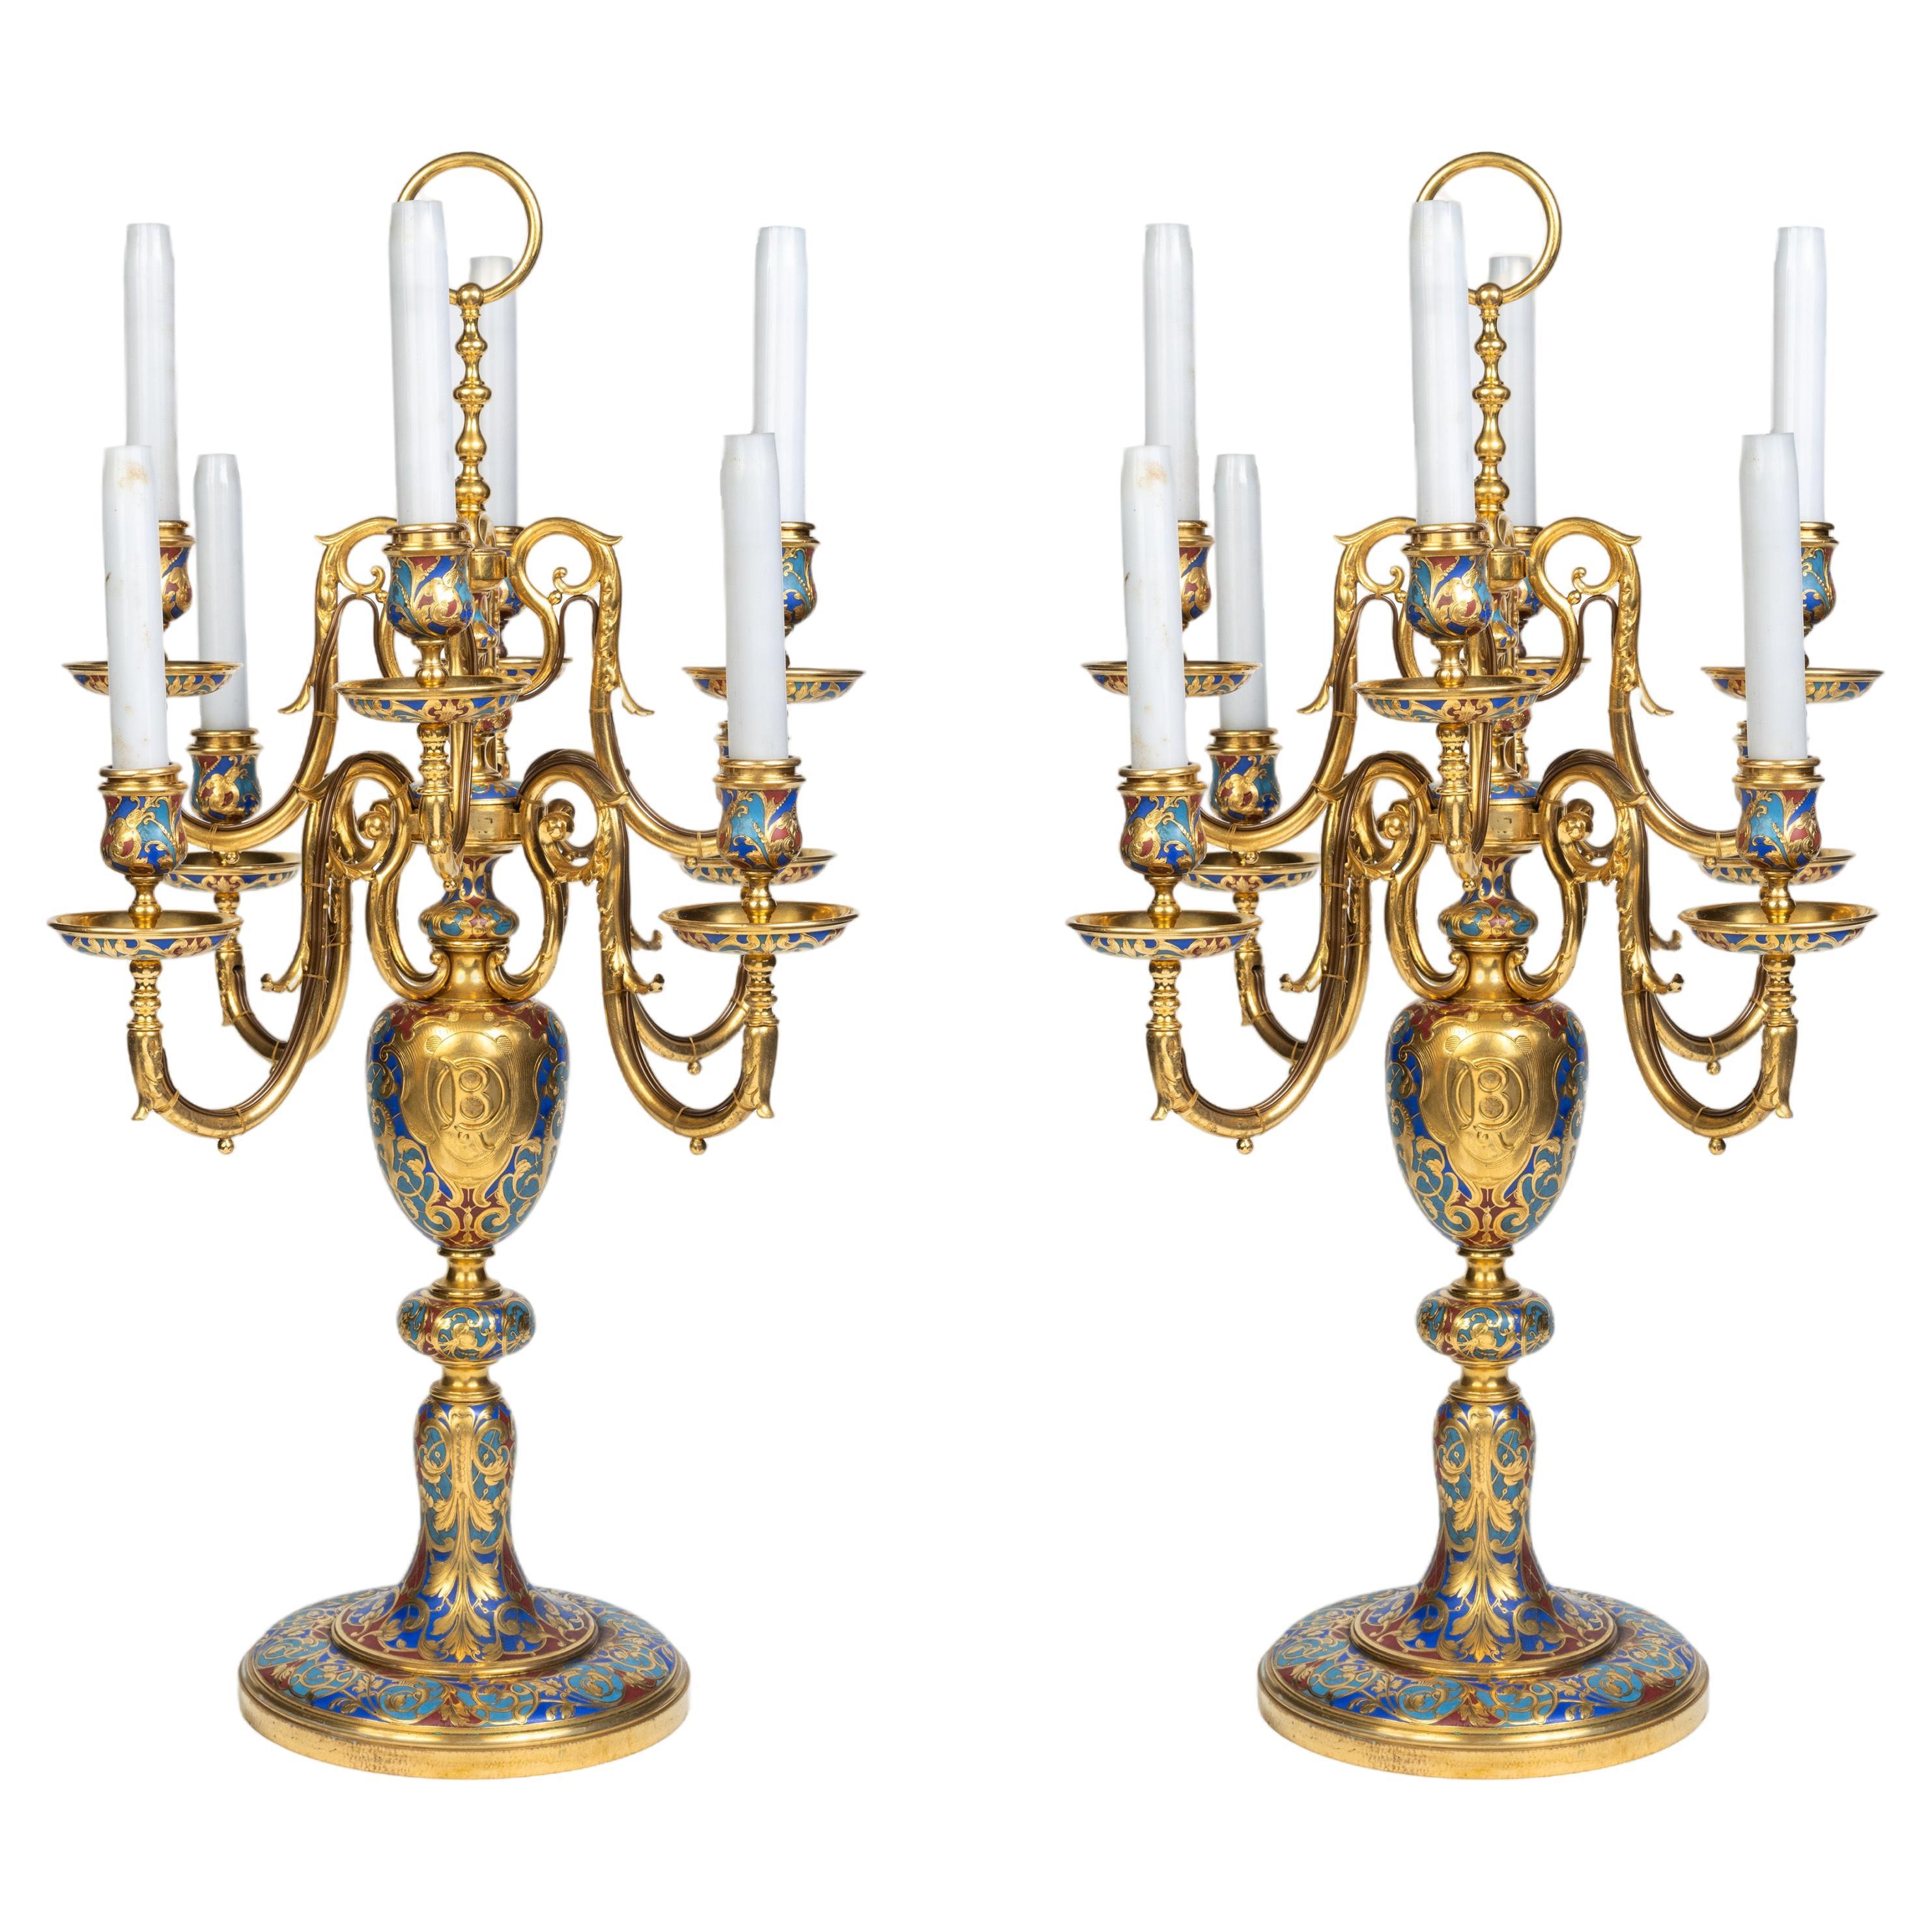 Une paire exceptionnelle de candélabres en émail champlevé et bronze doré de Sevin & Barbedienne